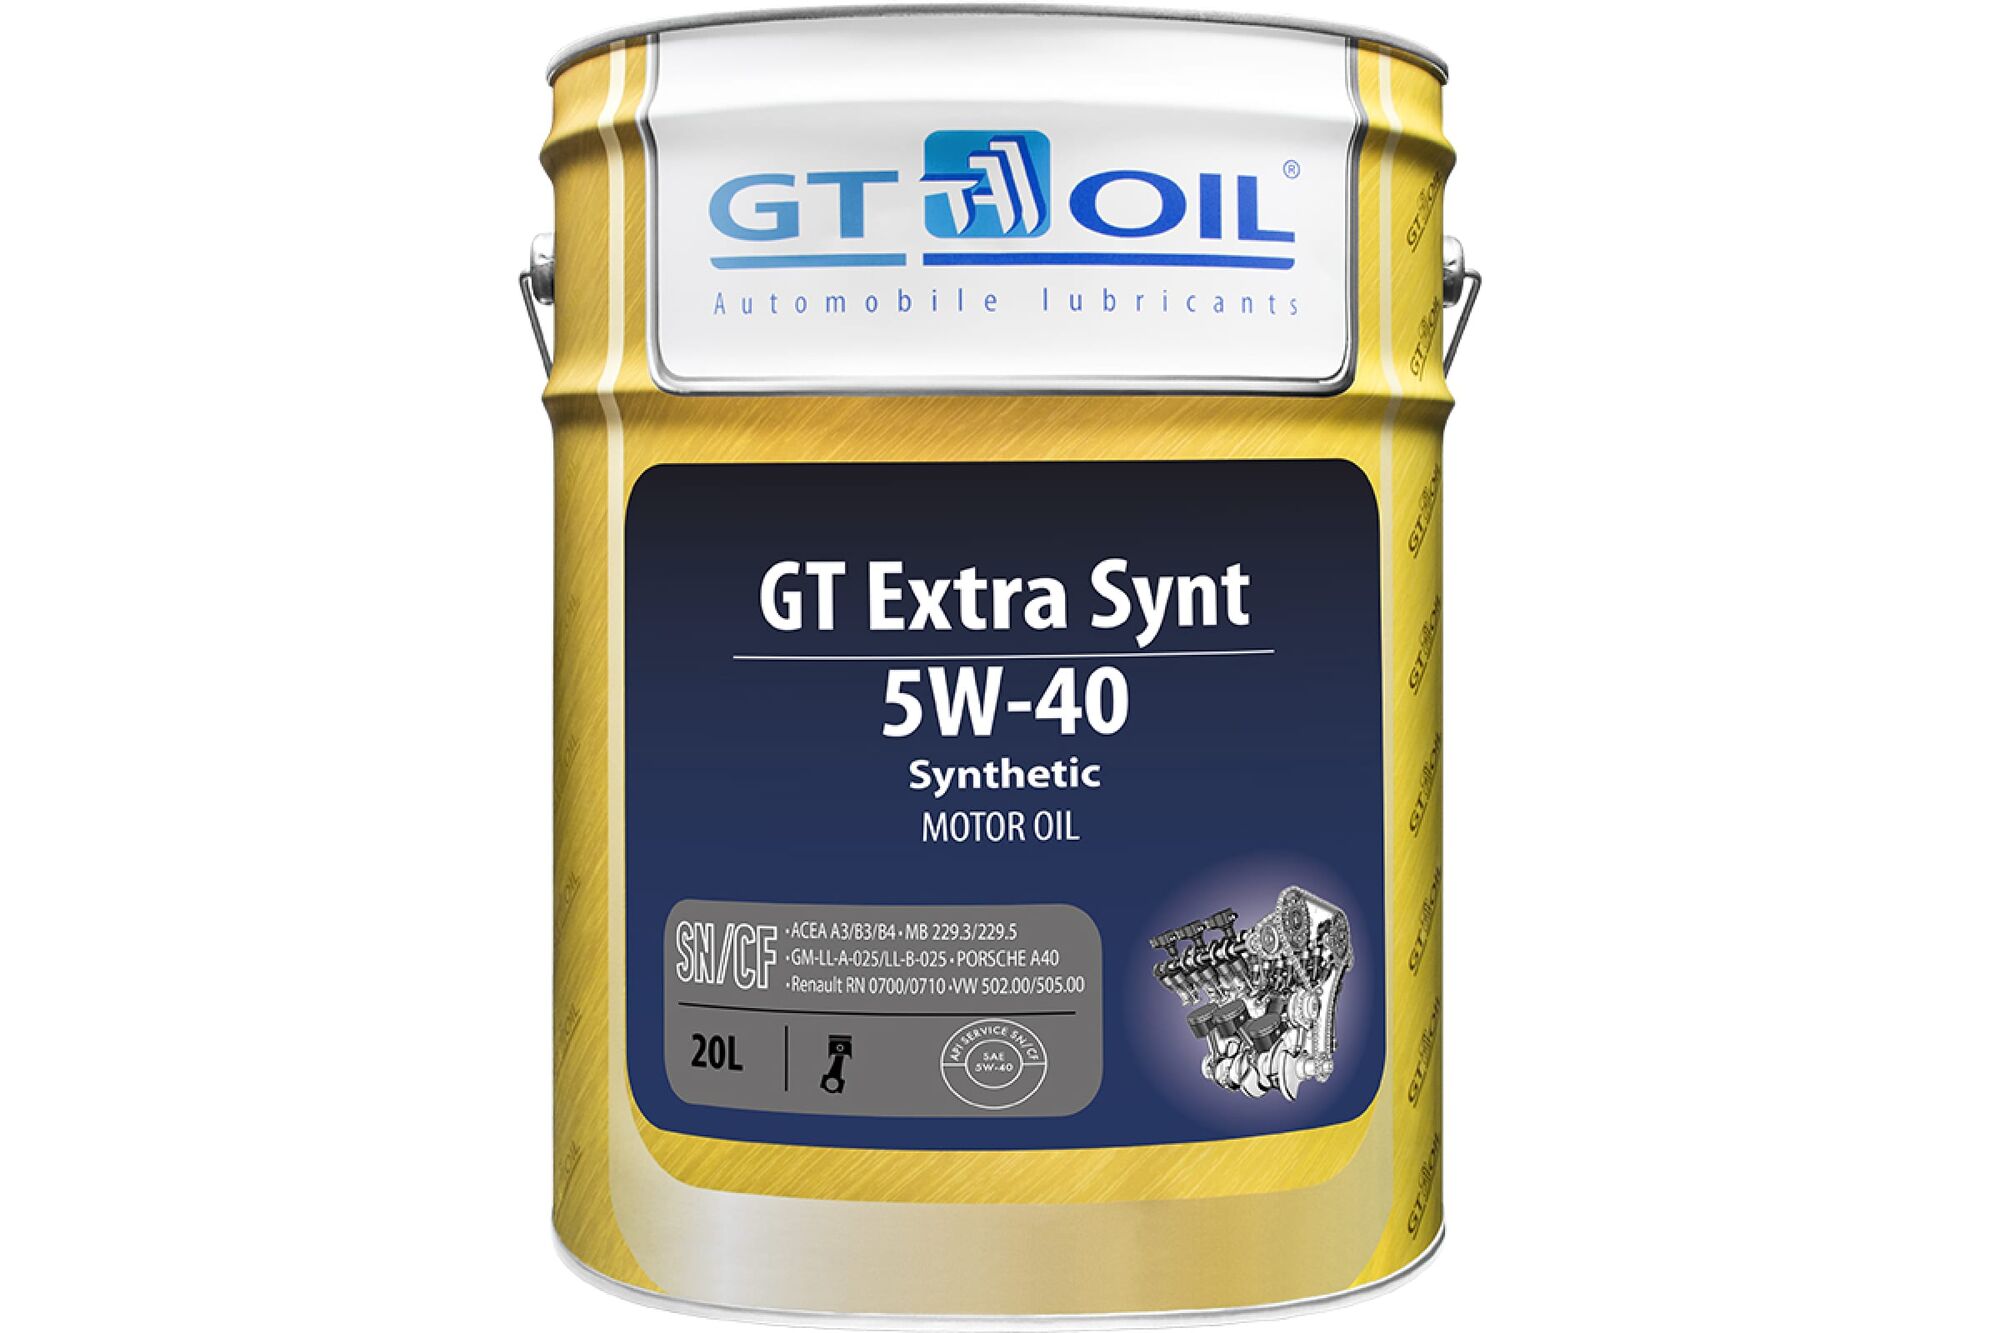 Масло Extra Synt, SAE 5W-40, API SN/CF, 20 л GT OIL 8809059407424 GT Oil